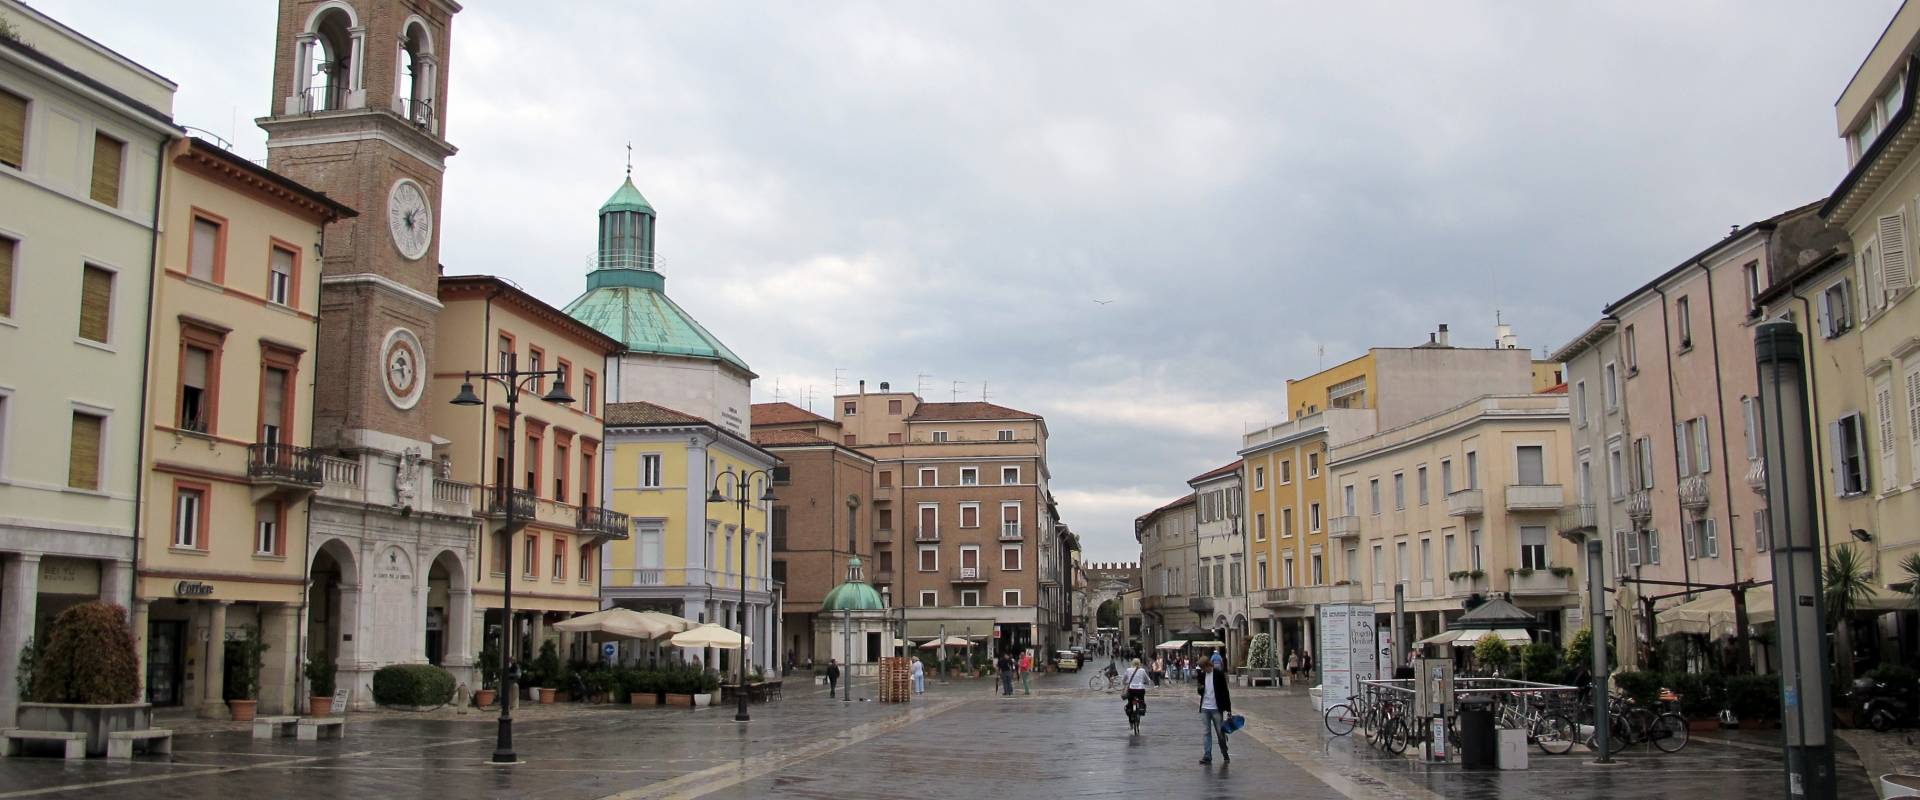 Rimini, piazza tre martiri, 02 foto di Sailko